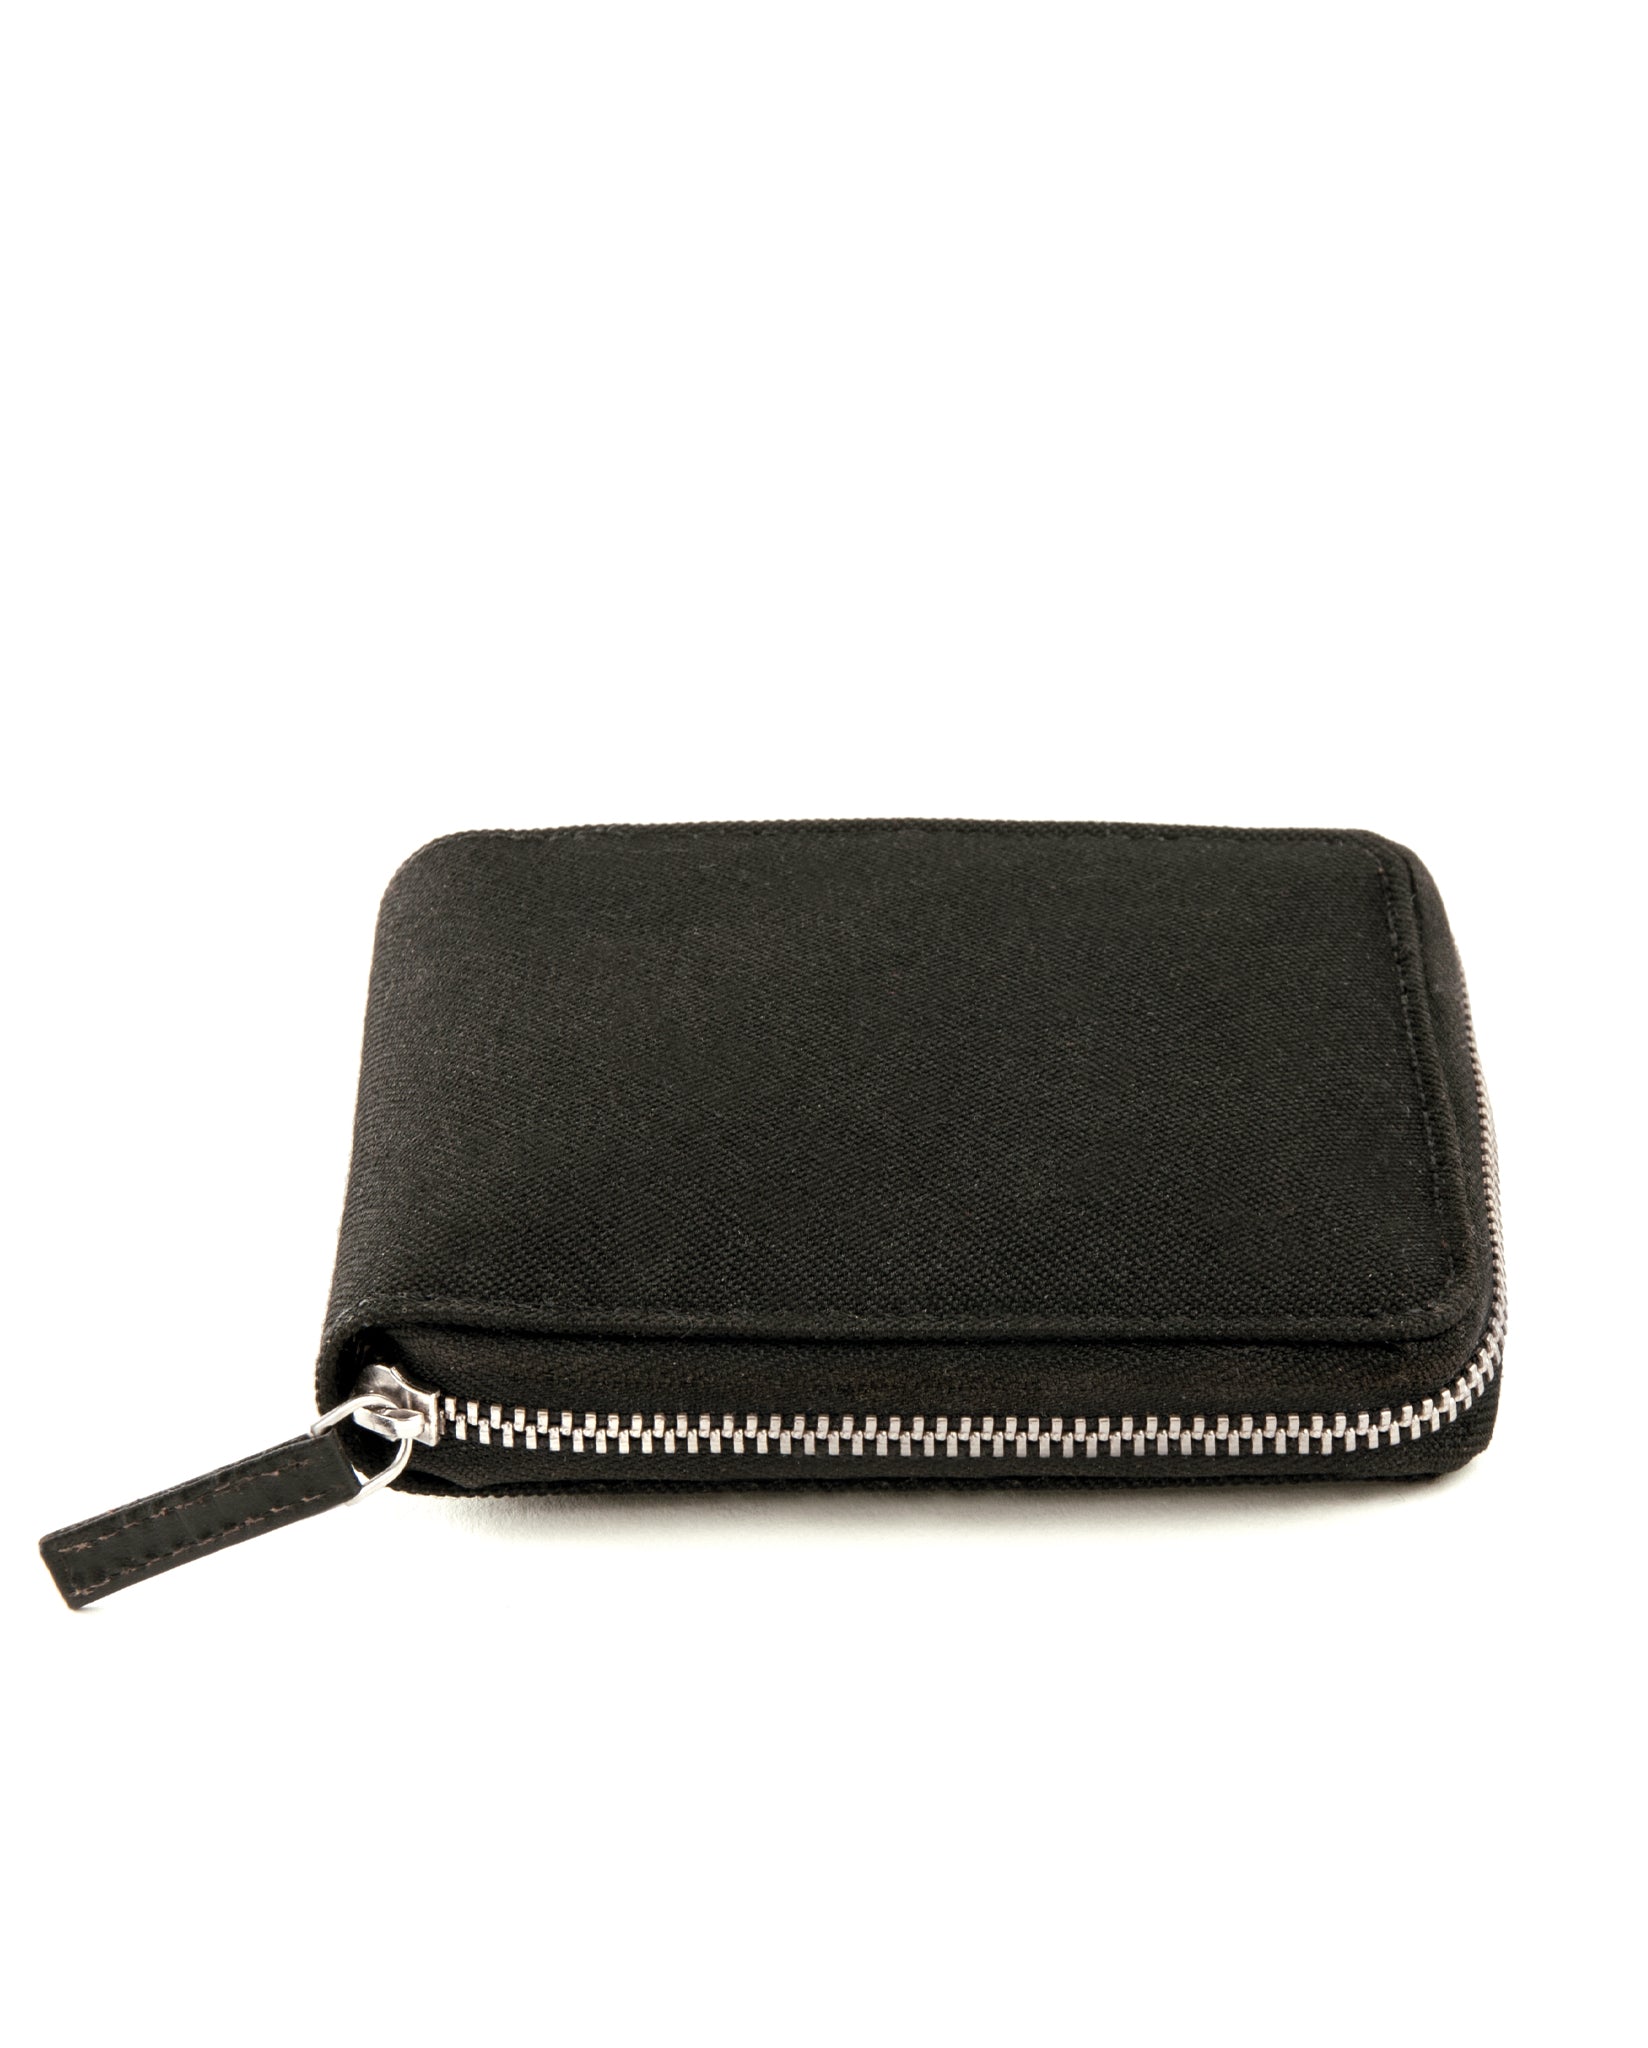 dothebag accessories wallet zip M